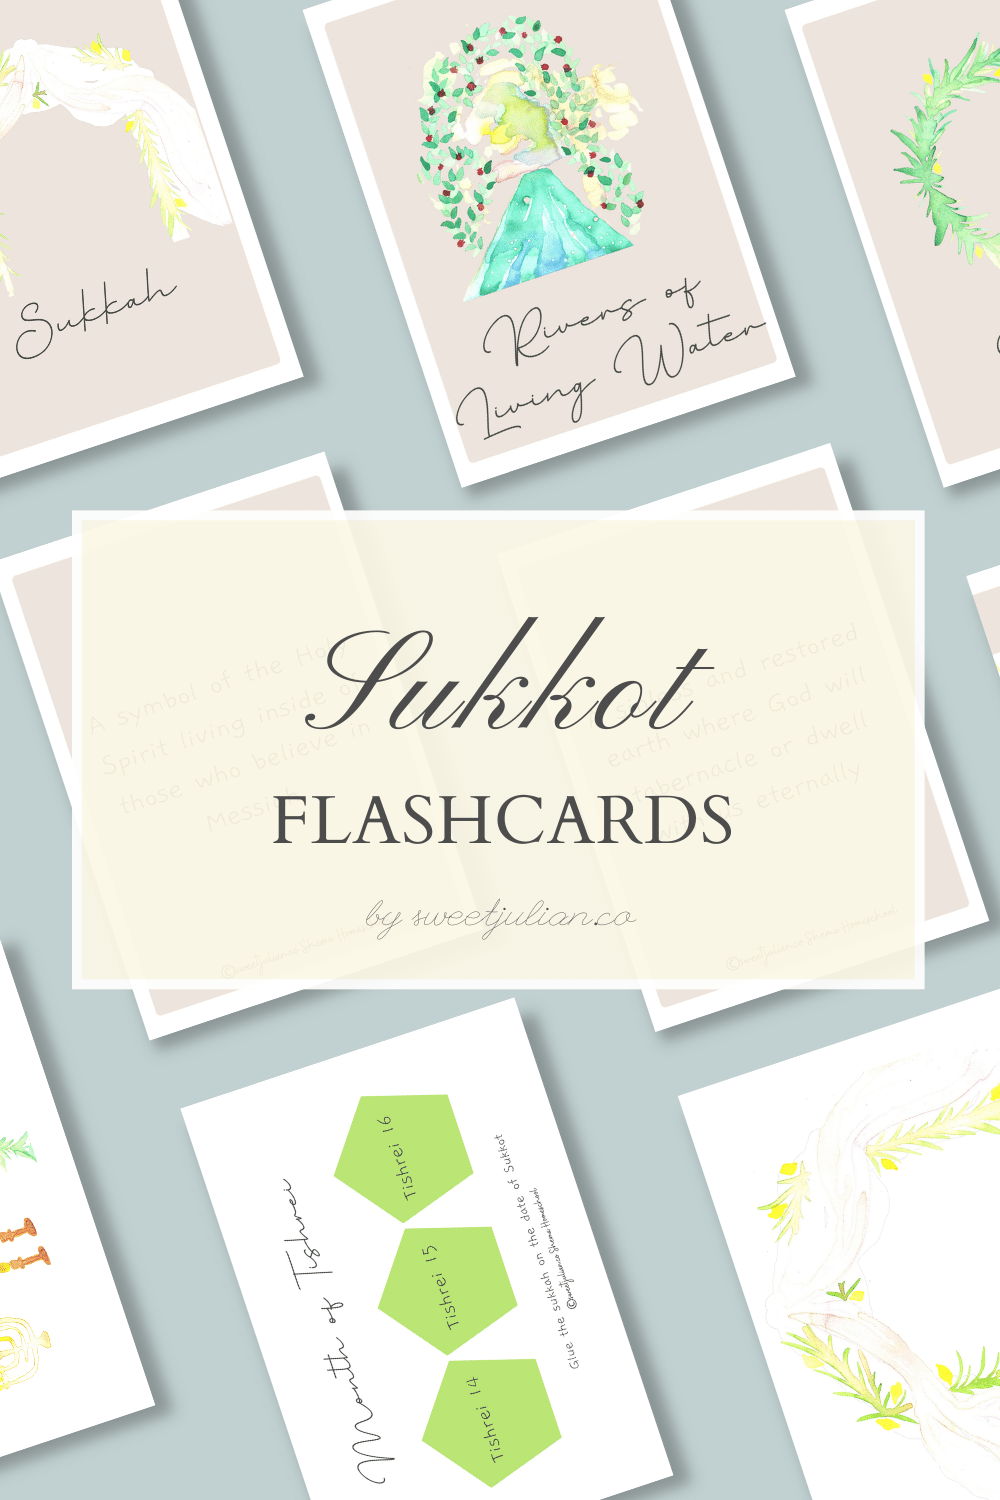 Sukkot Flashcards + More 🌿🍋